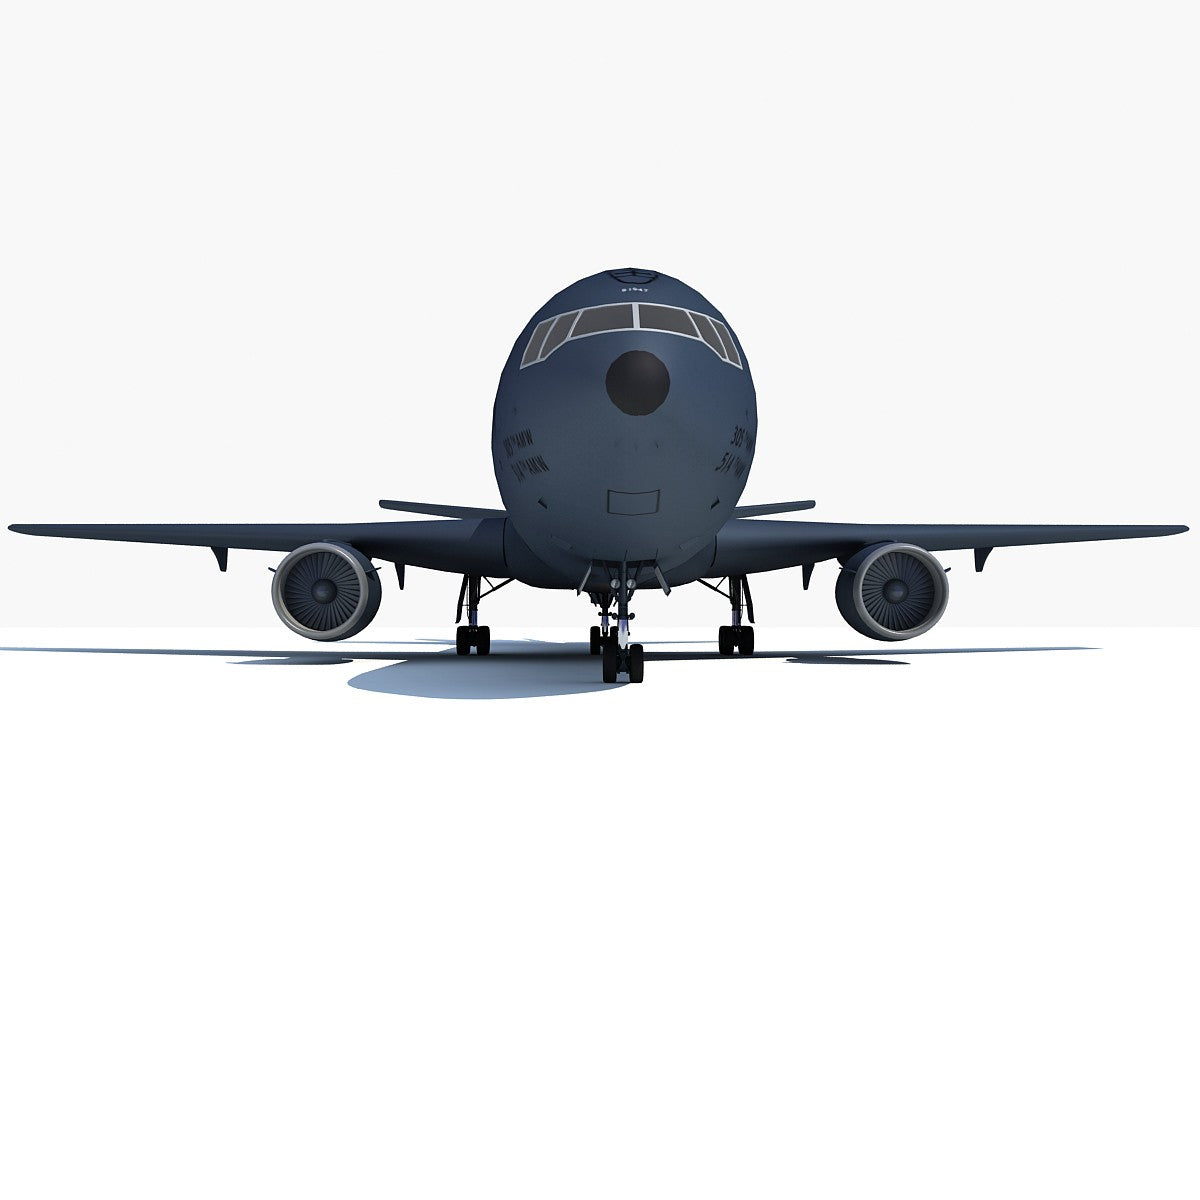 3D Extender Refueling Aircraft Model